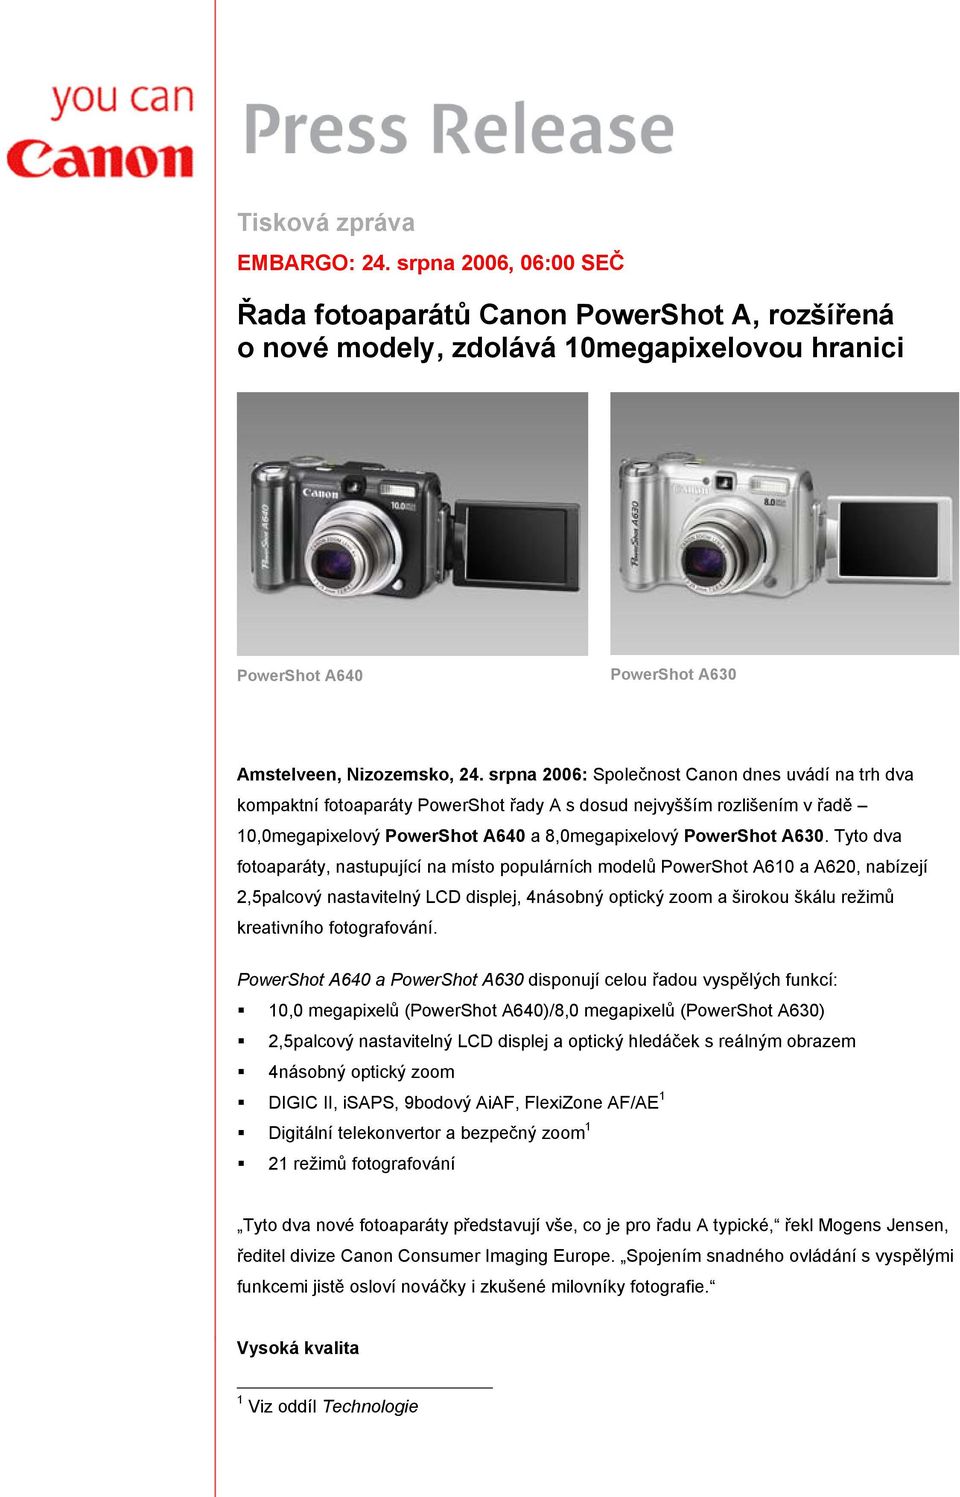 Tyto dva fotoaparáty, nastupující na místo populárních modelů PowerShot A610 a A620, nabízejí 2,5palcový nastavitelný LCD displej, 4násobný optický zoom a širokou škálu režimů kreativního